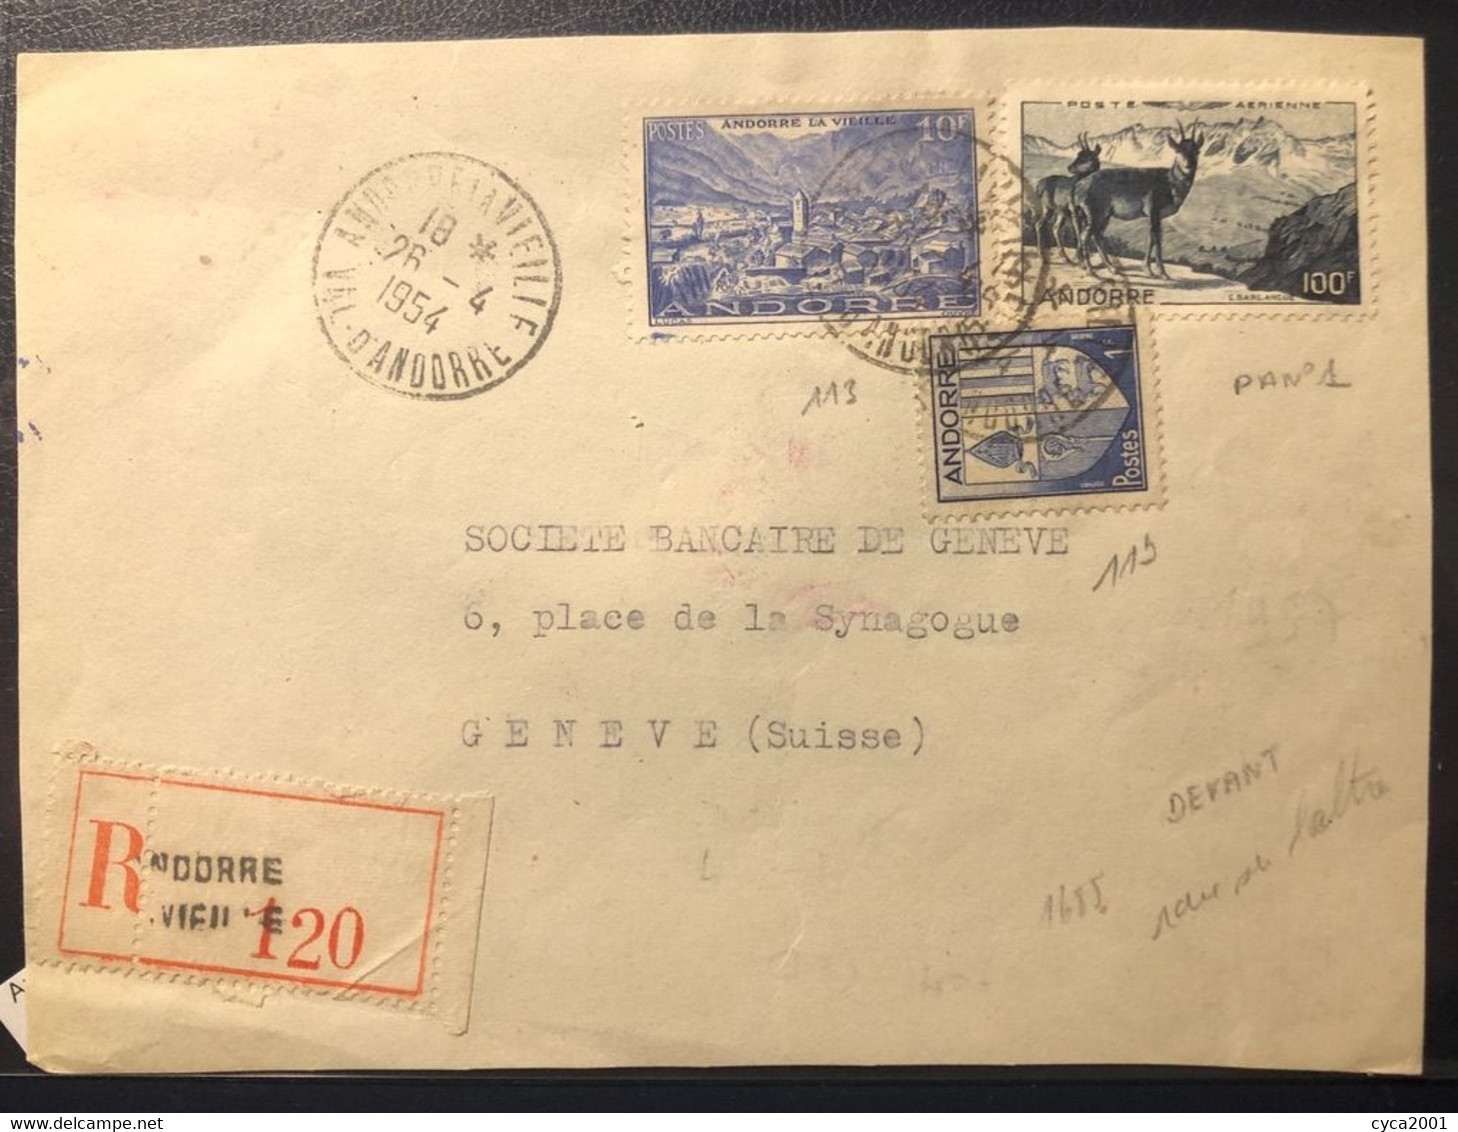 Andorre N°113+119+P.AN°1 OBL Andorre La Vielle (1954) Sur Lettre Recommandée Pour La Suisse, Affranchissement Rare.TB - Lettres & Documents